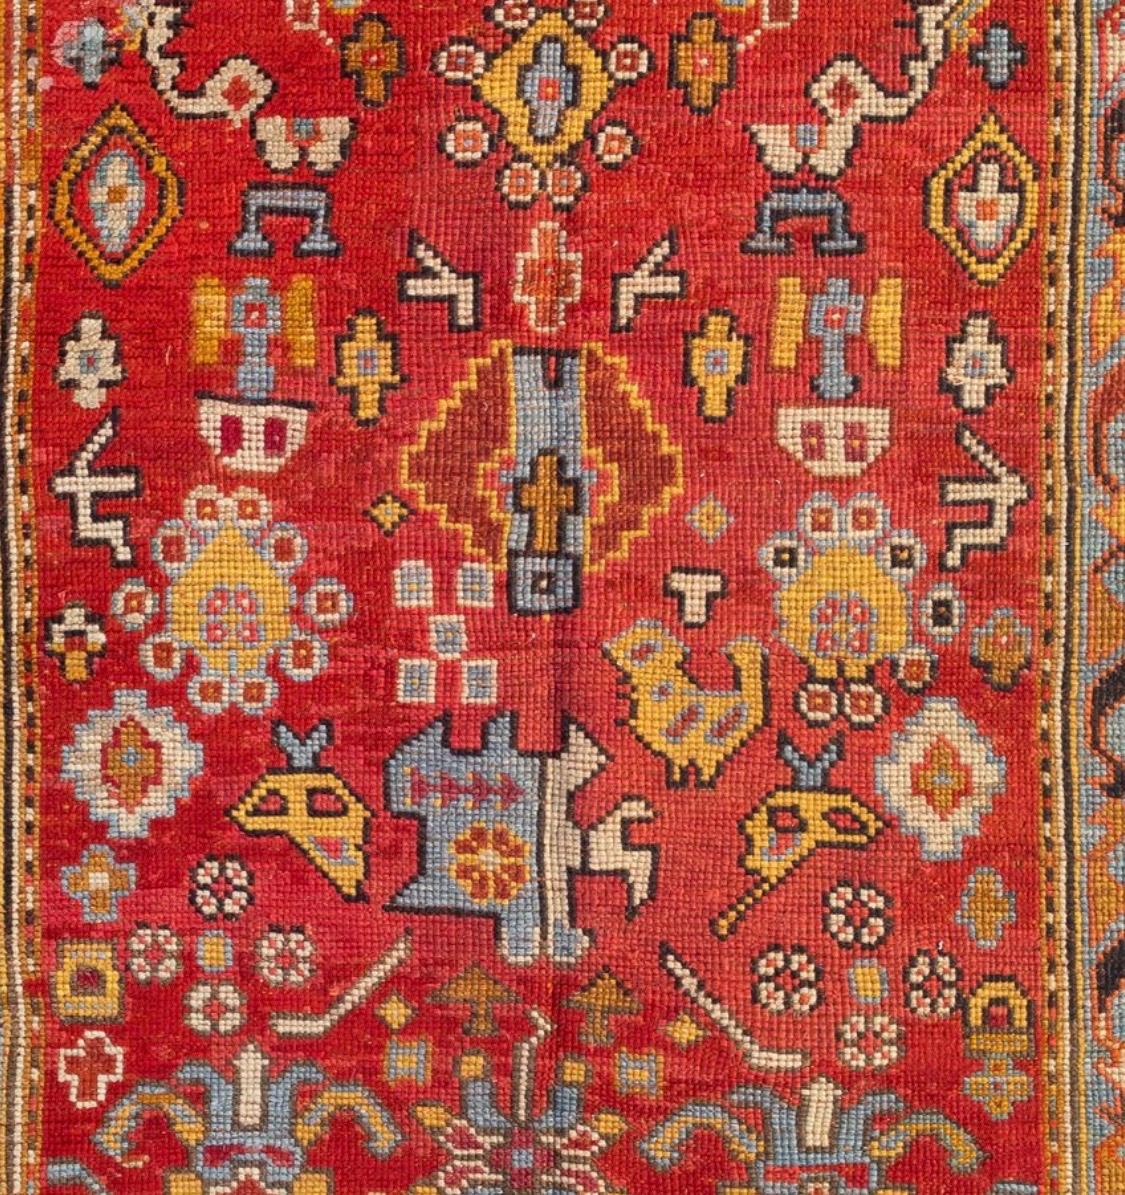 Unverfälschter und fein gewebter handgeknüpfter antiker quadratischer rot-goldener hellblauer türkischer Oushak-Teppich, um 1880-1900. Es misst 4 x 4,4 Fuß.
   